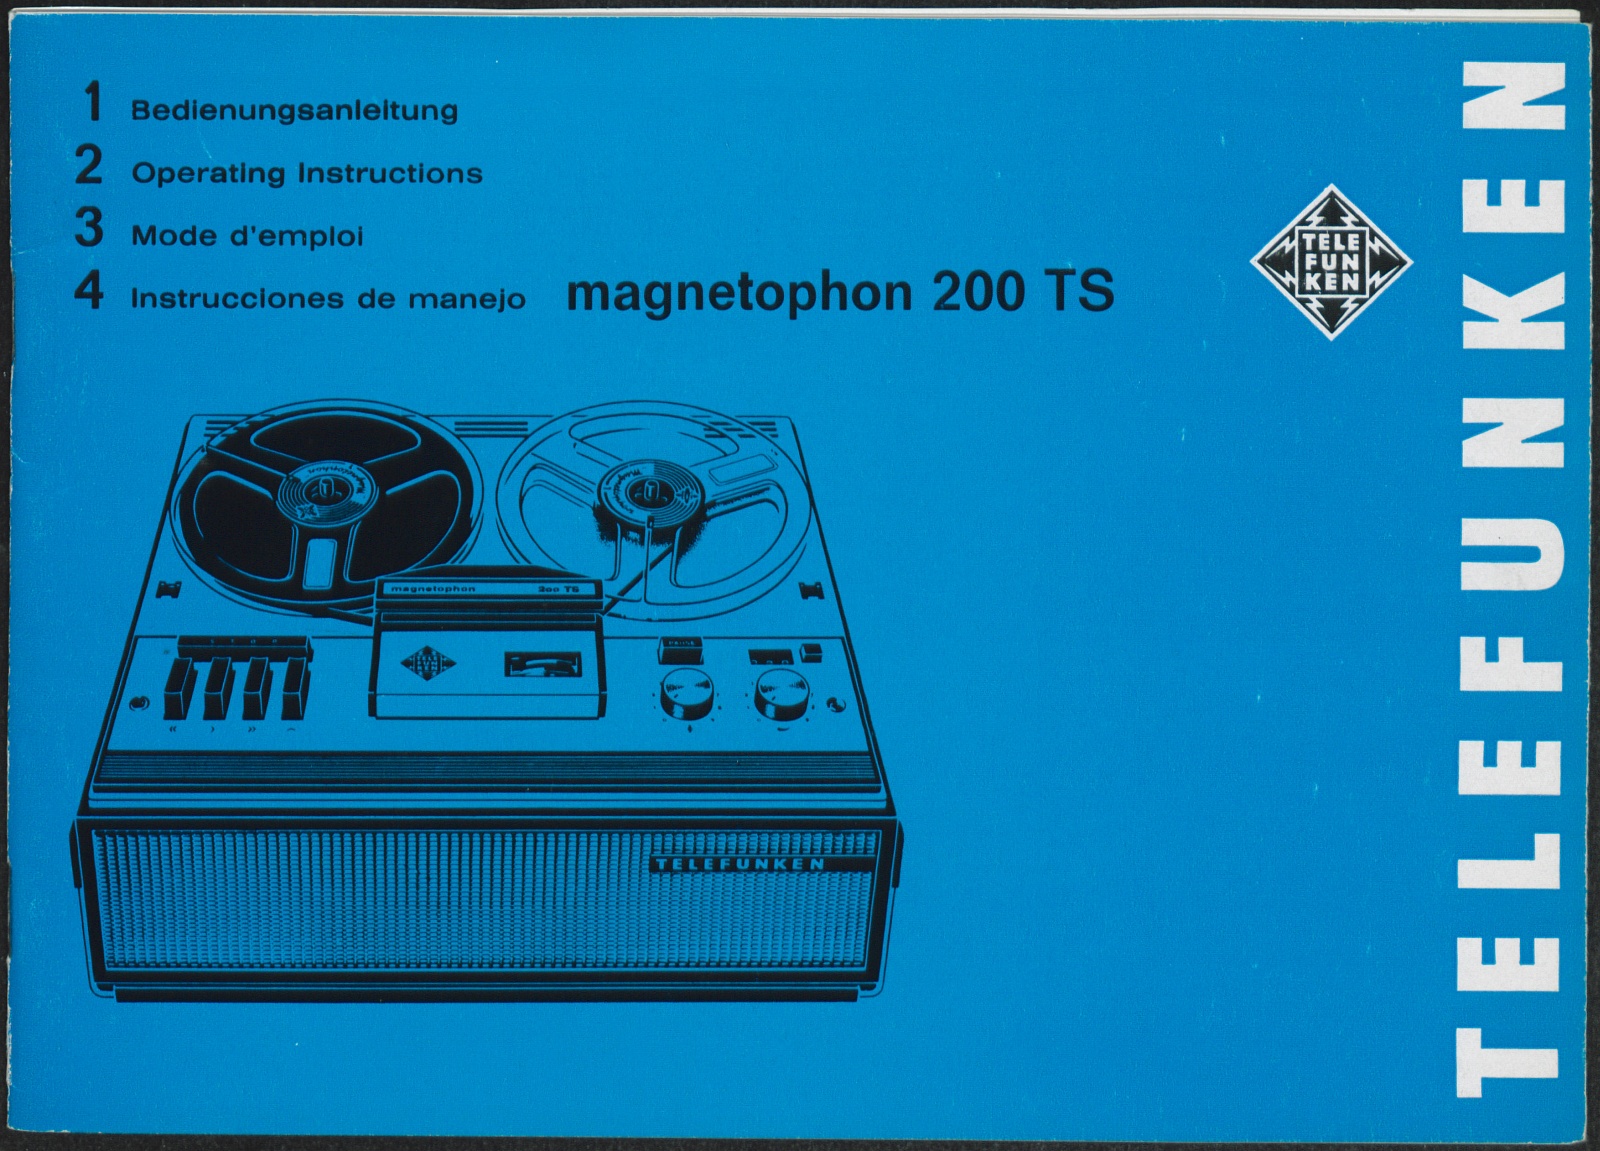 Bedienungsanleitung: Bedienungsanleitung Telefunken magnetophon 200 TS (Stiftung Deutsches Technikmuseum Berlin CC0)